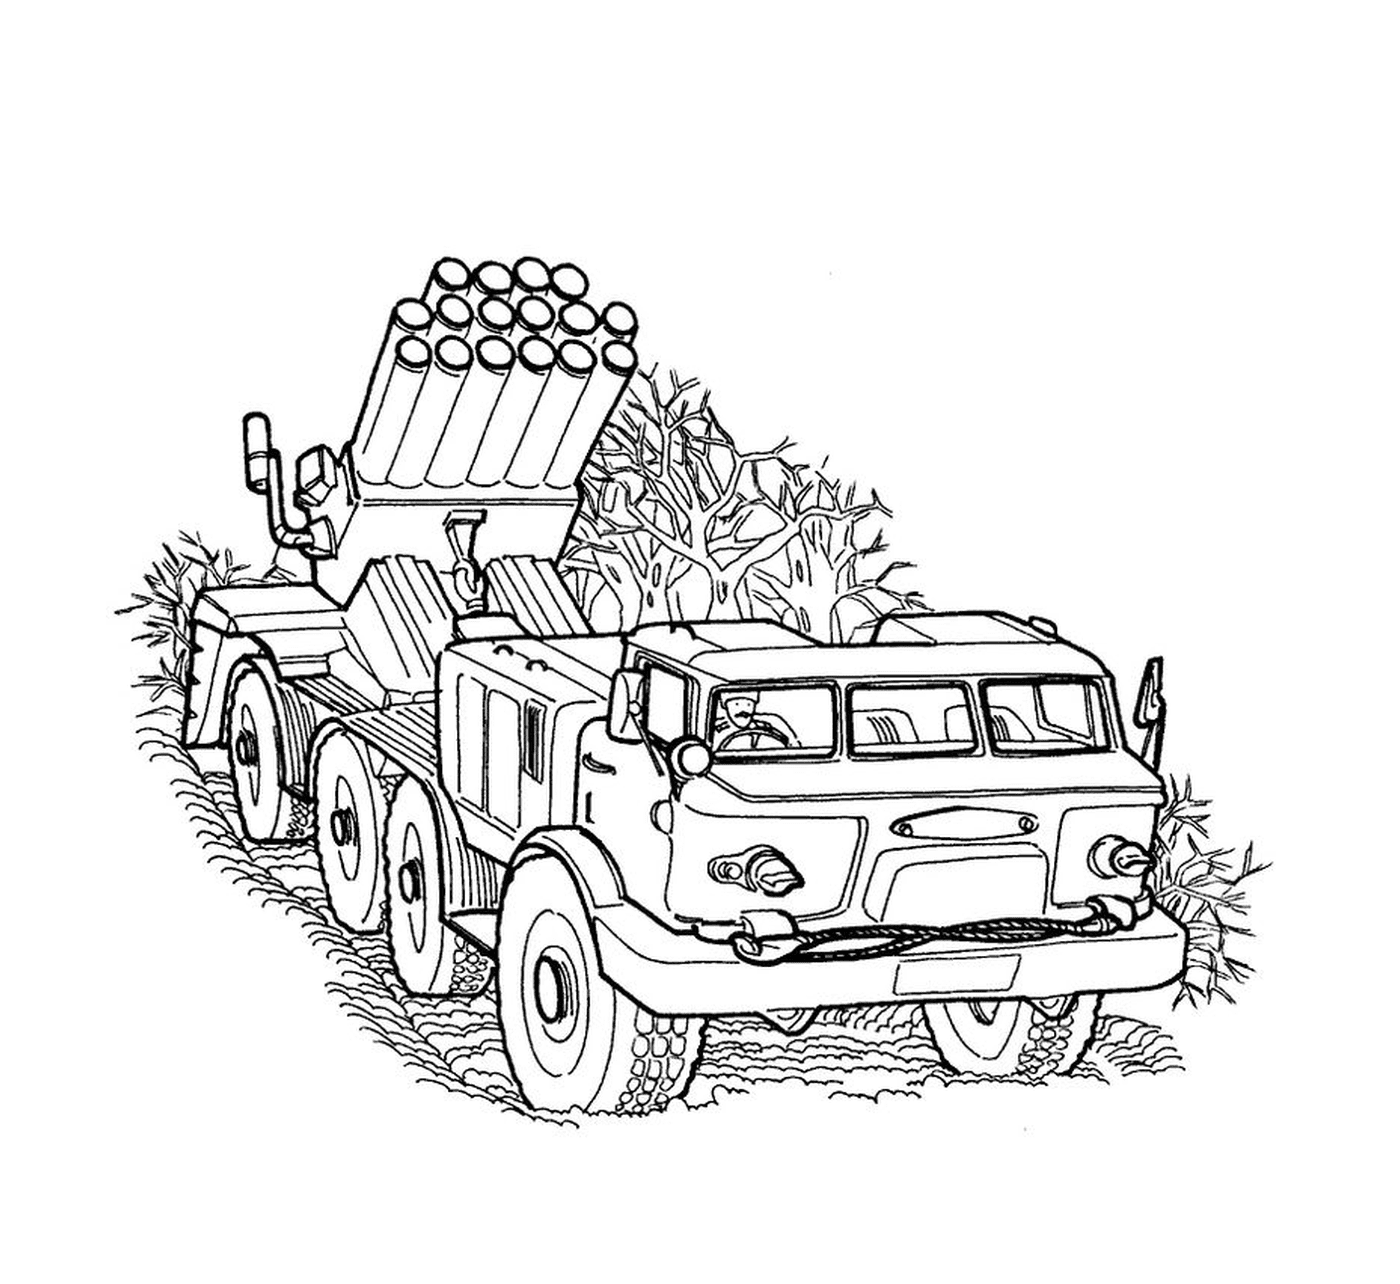   Véhicule militaire : un vieux camion avec un lance-roquettes 